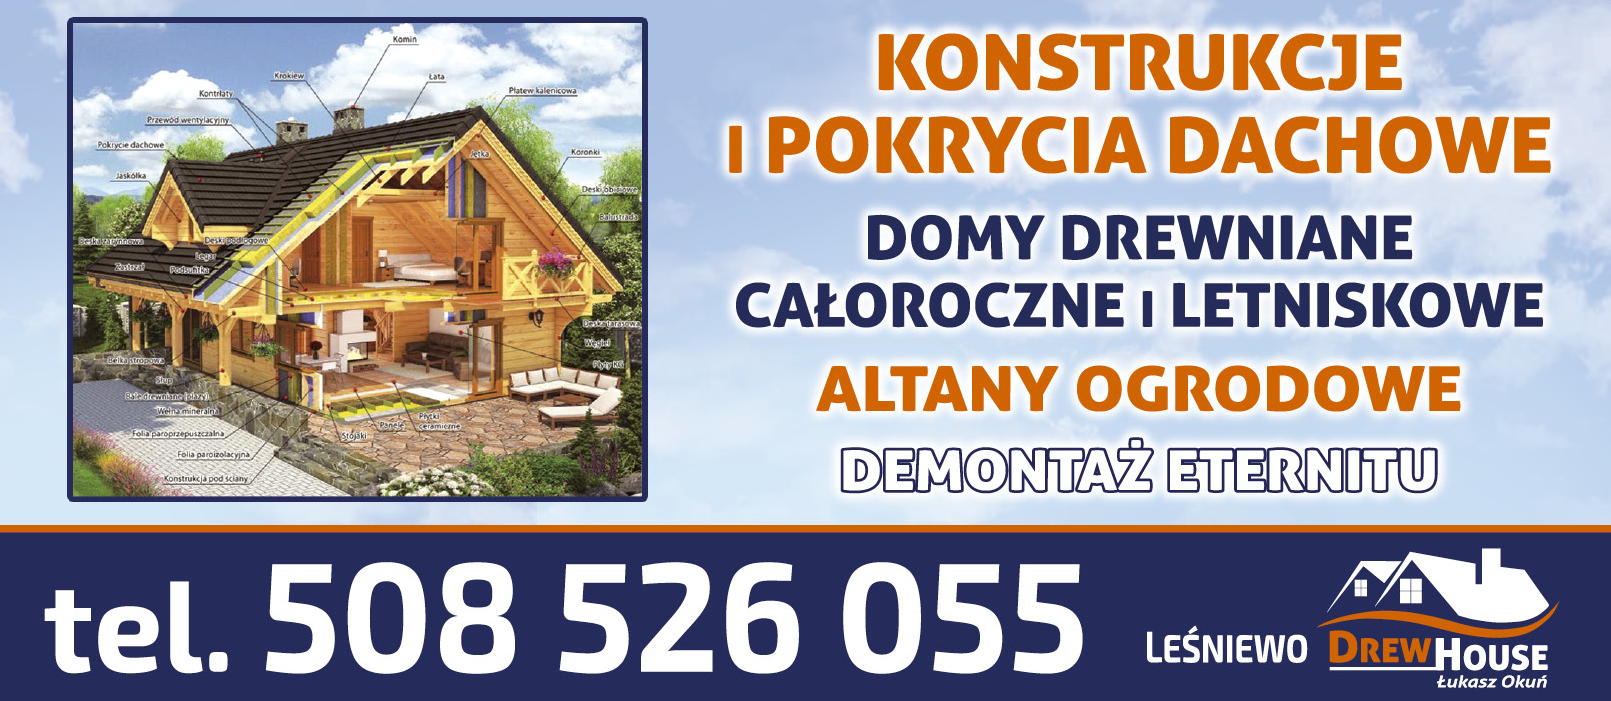 DREW HOUSE Łukasz Okuń Leśniewo Konstrukcje i Pokrycia Dachowe / Domy Drewniane / Altany Ogrodowe